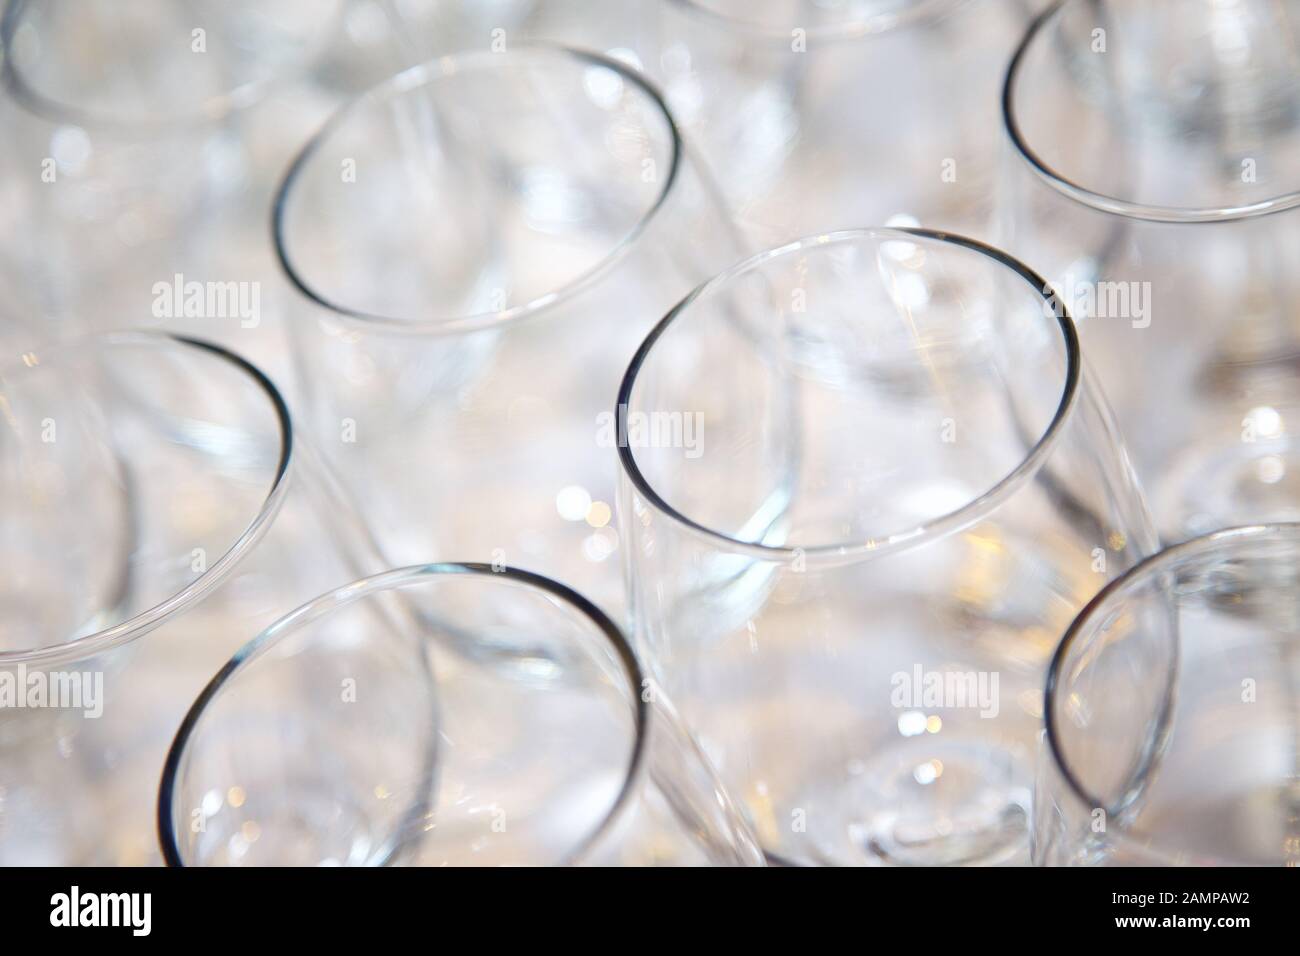 Sammlung von leeren Gläser auf eine Bar oder ein Restaurant Zähler angeordnet. Stockfoto